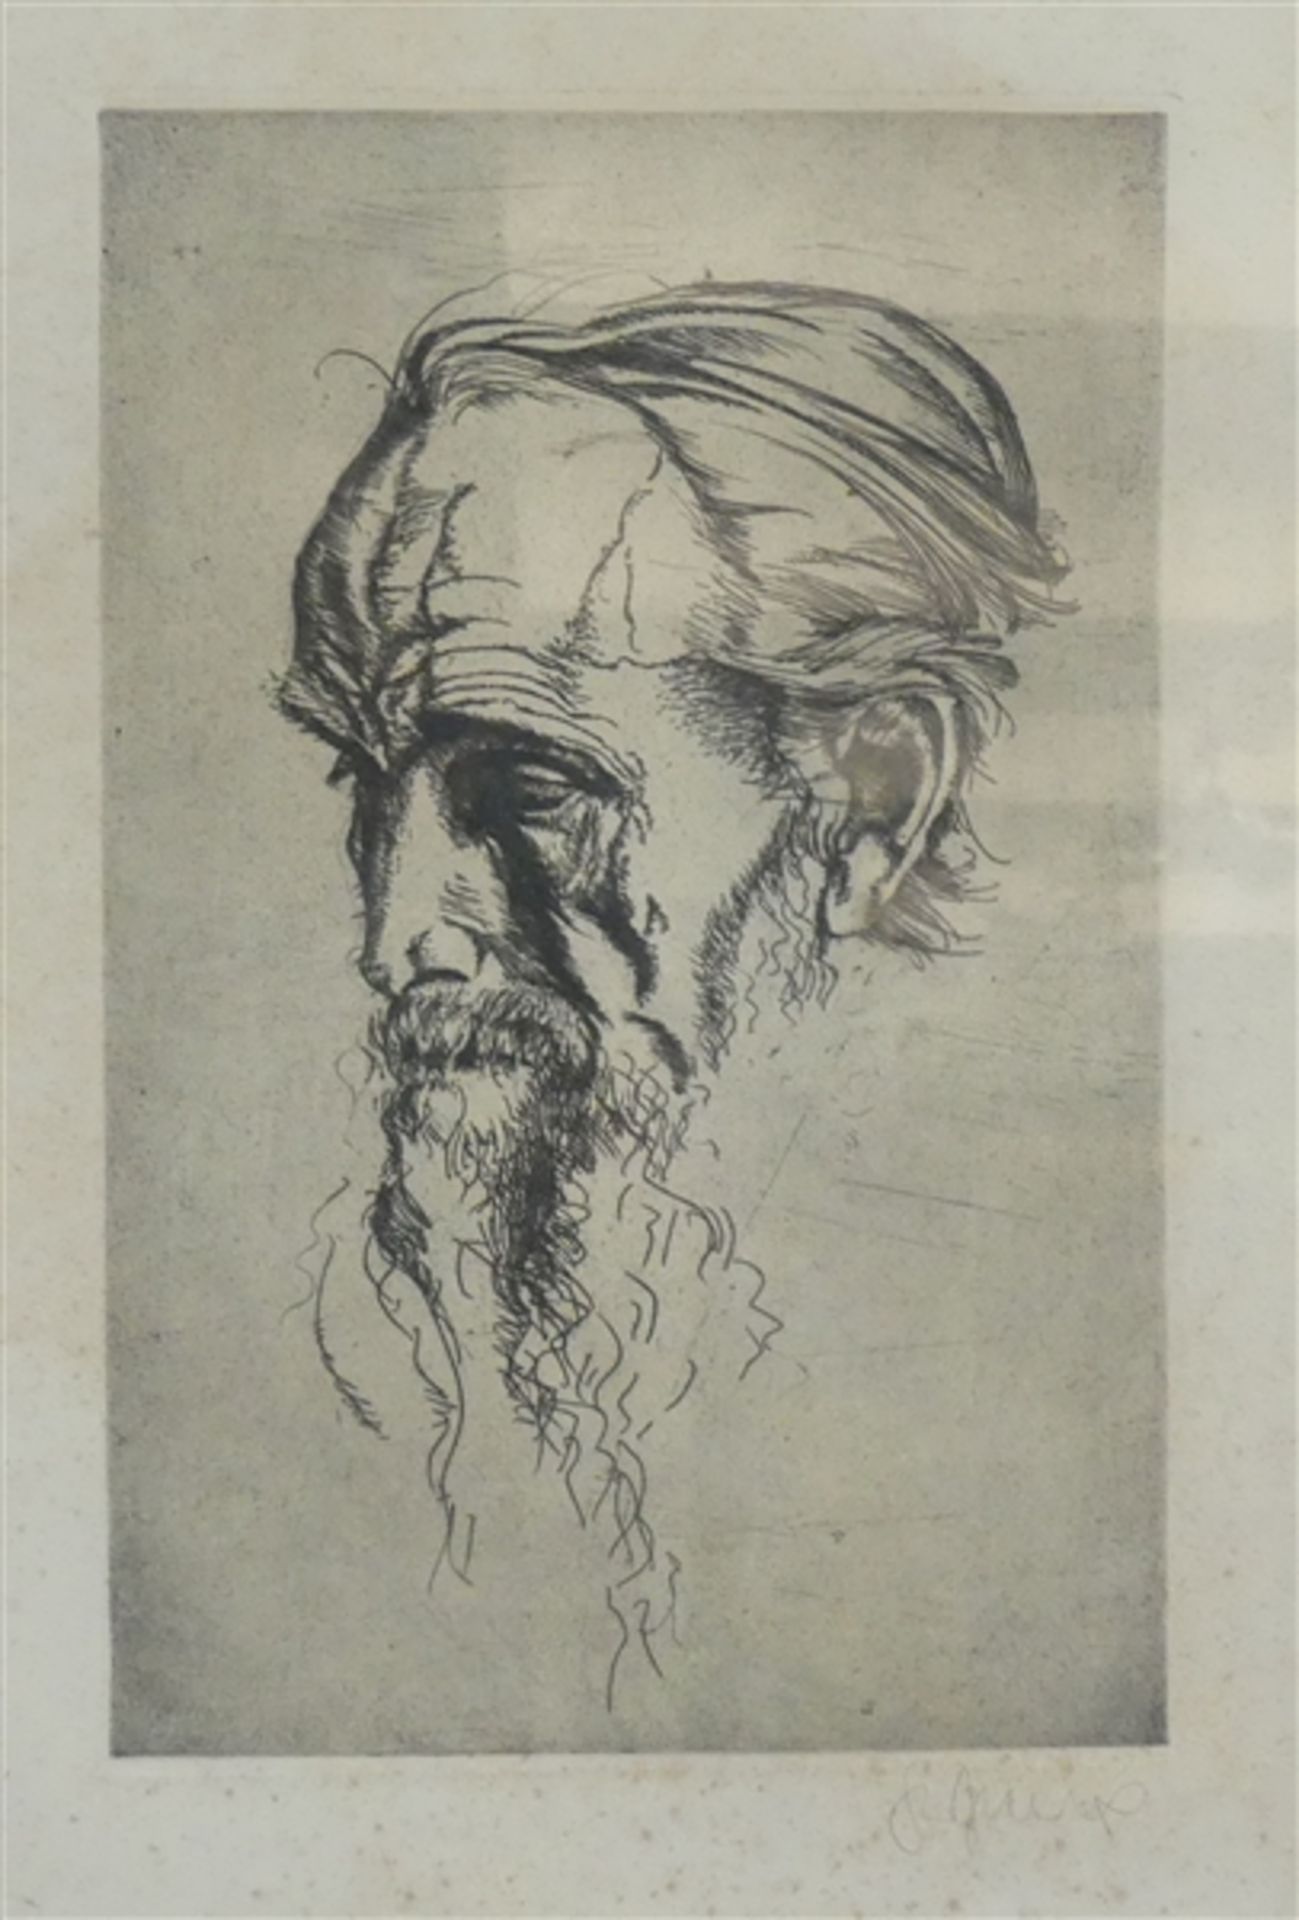 Radierung von Sepp Frank, Kopf des Michelangelo, signiert, stockfleckig, 41x25 cm, im Rahmen,